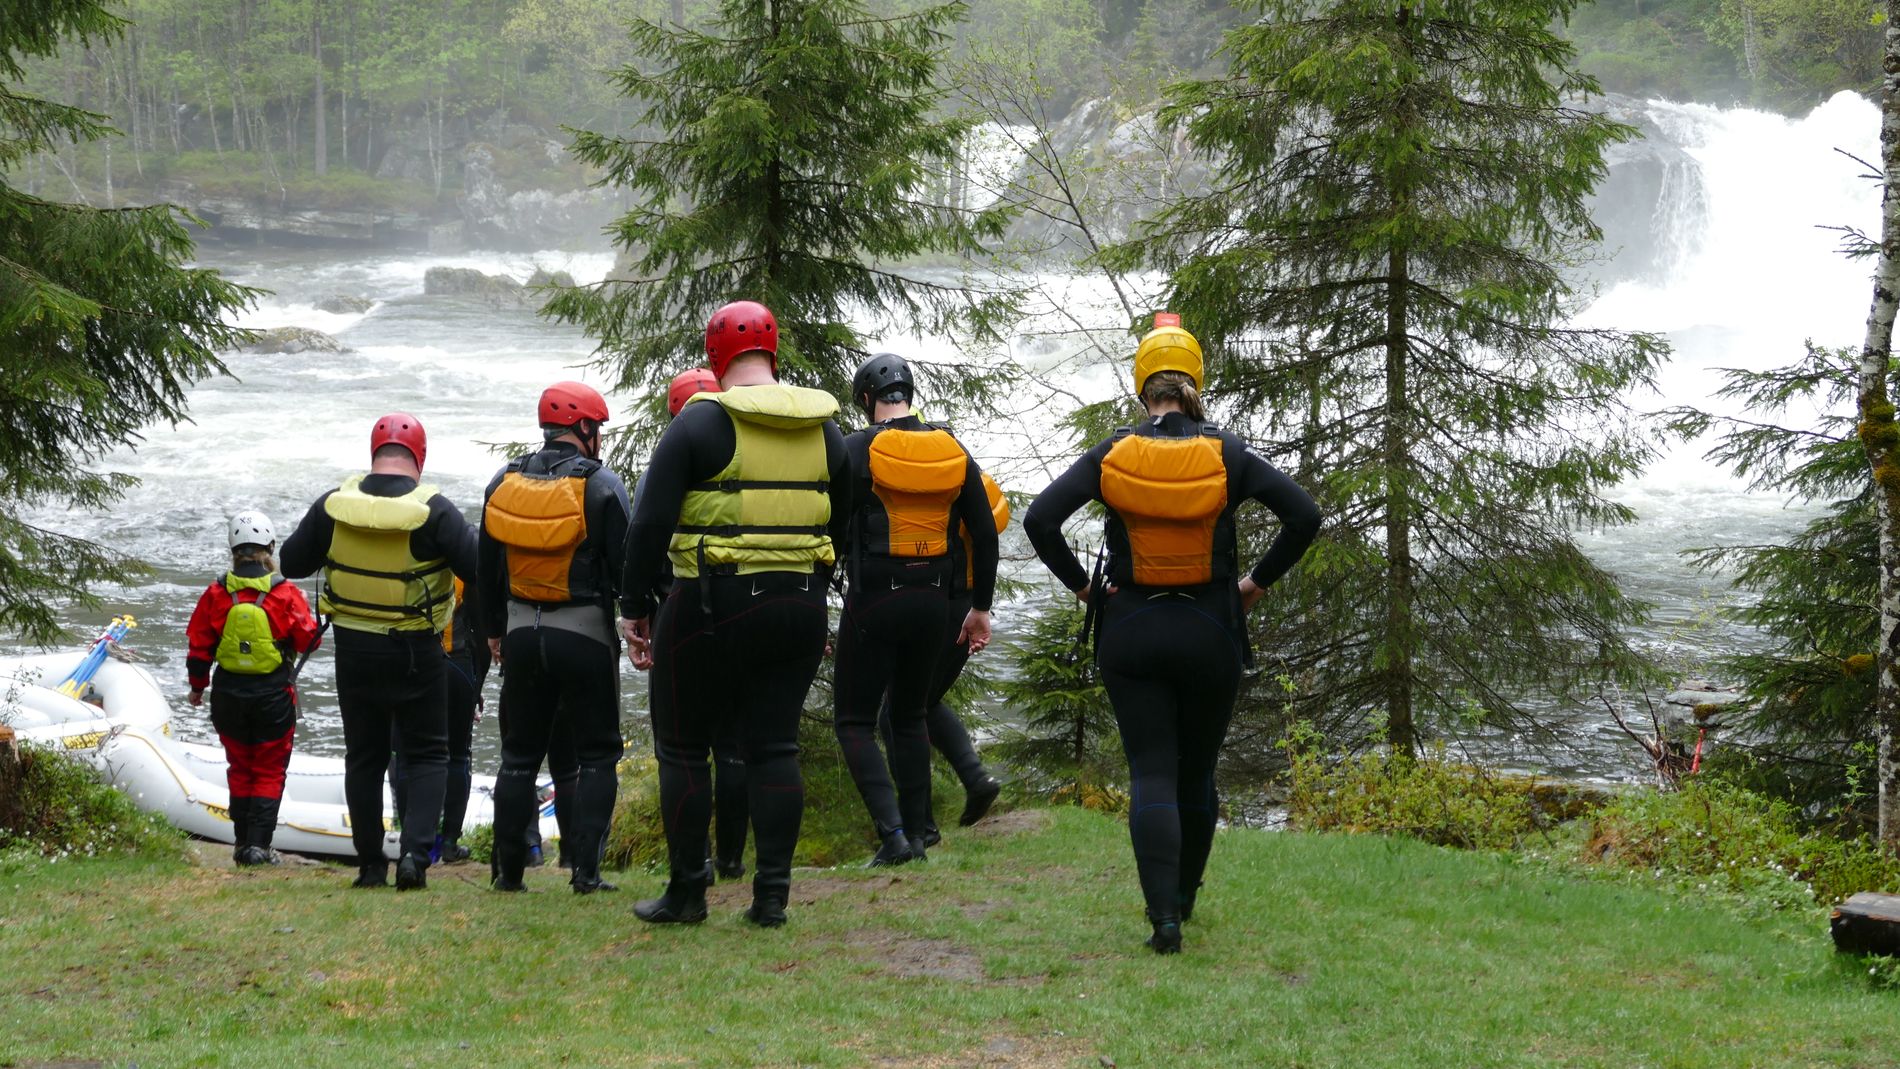 UTSTYRET I ORDEN: Hele mannskapet er iført våtdrakter, hjelmer og redningsvester som sikrer elvenedfarten. 